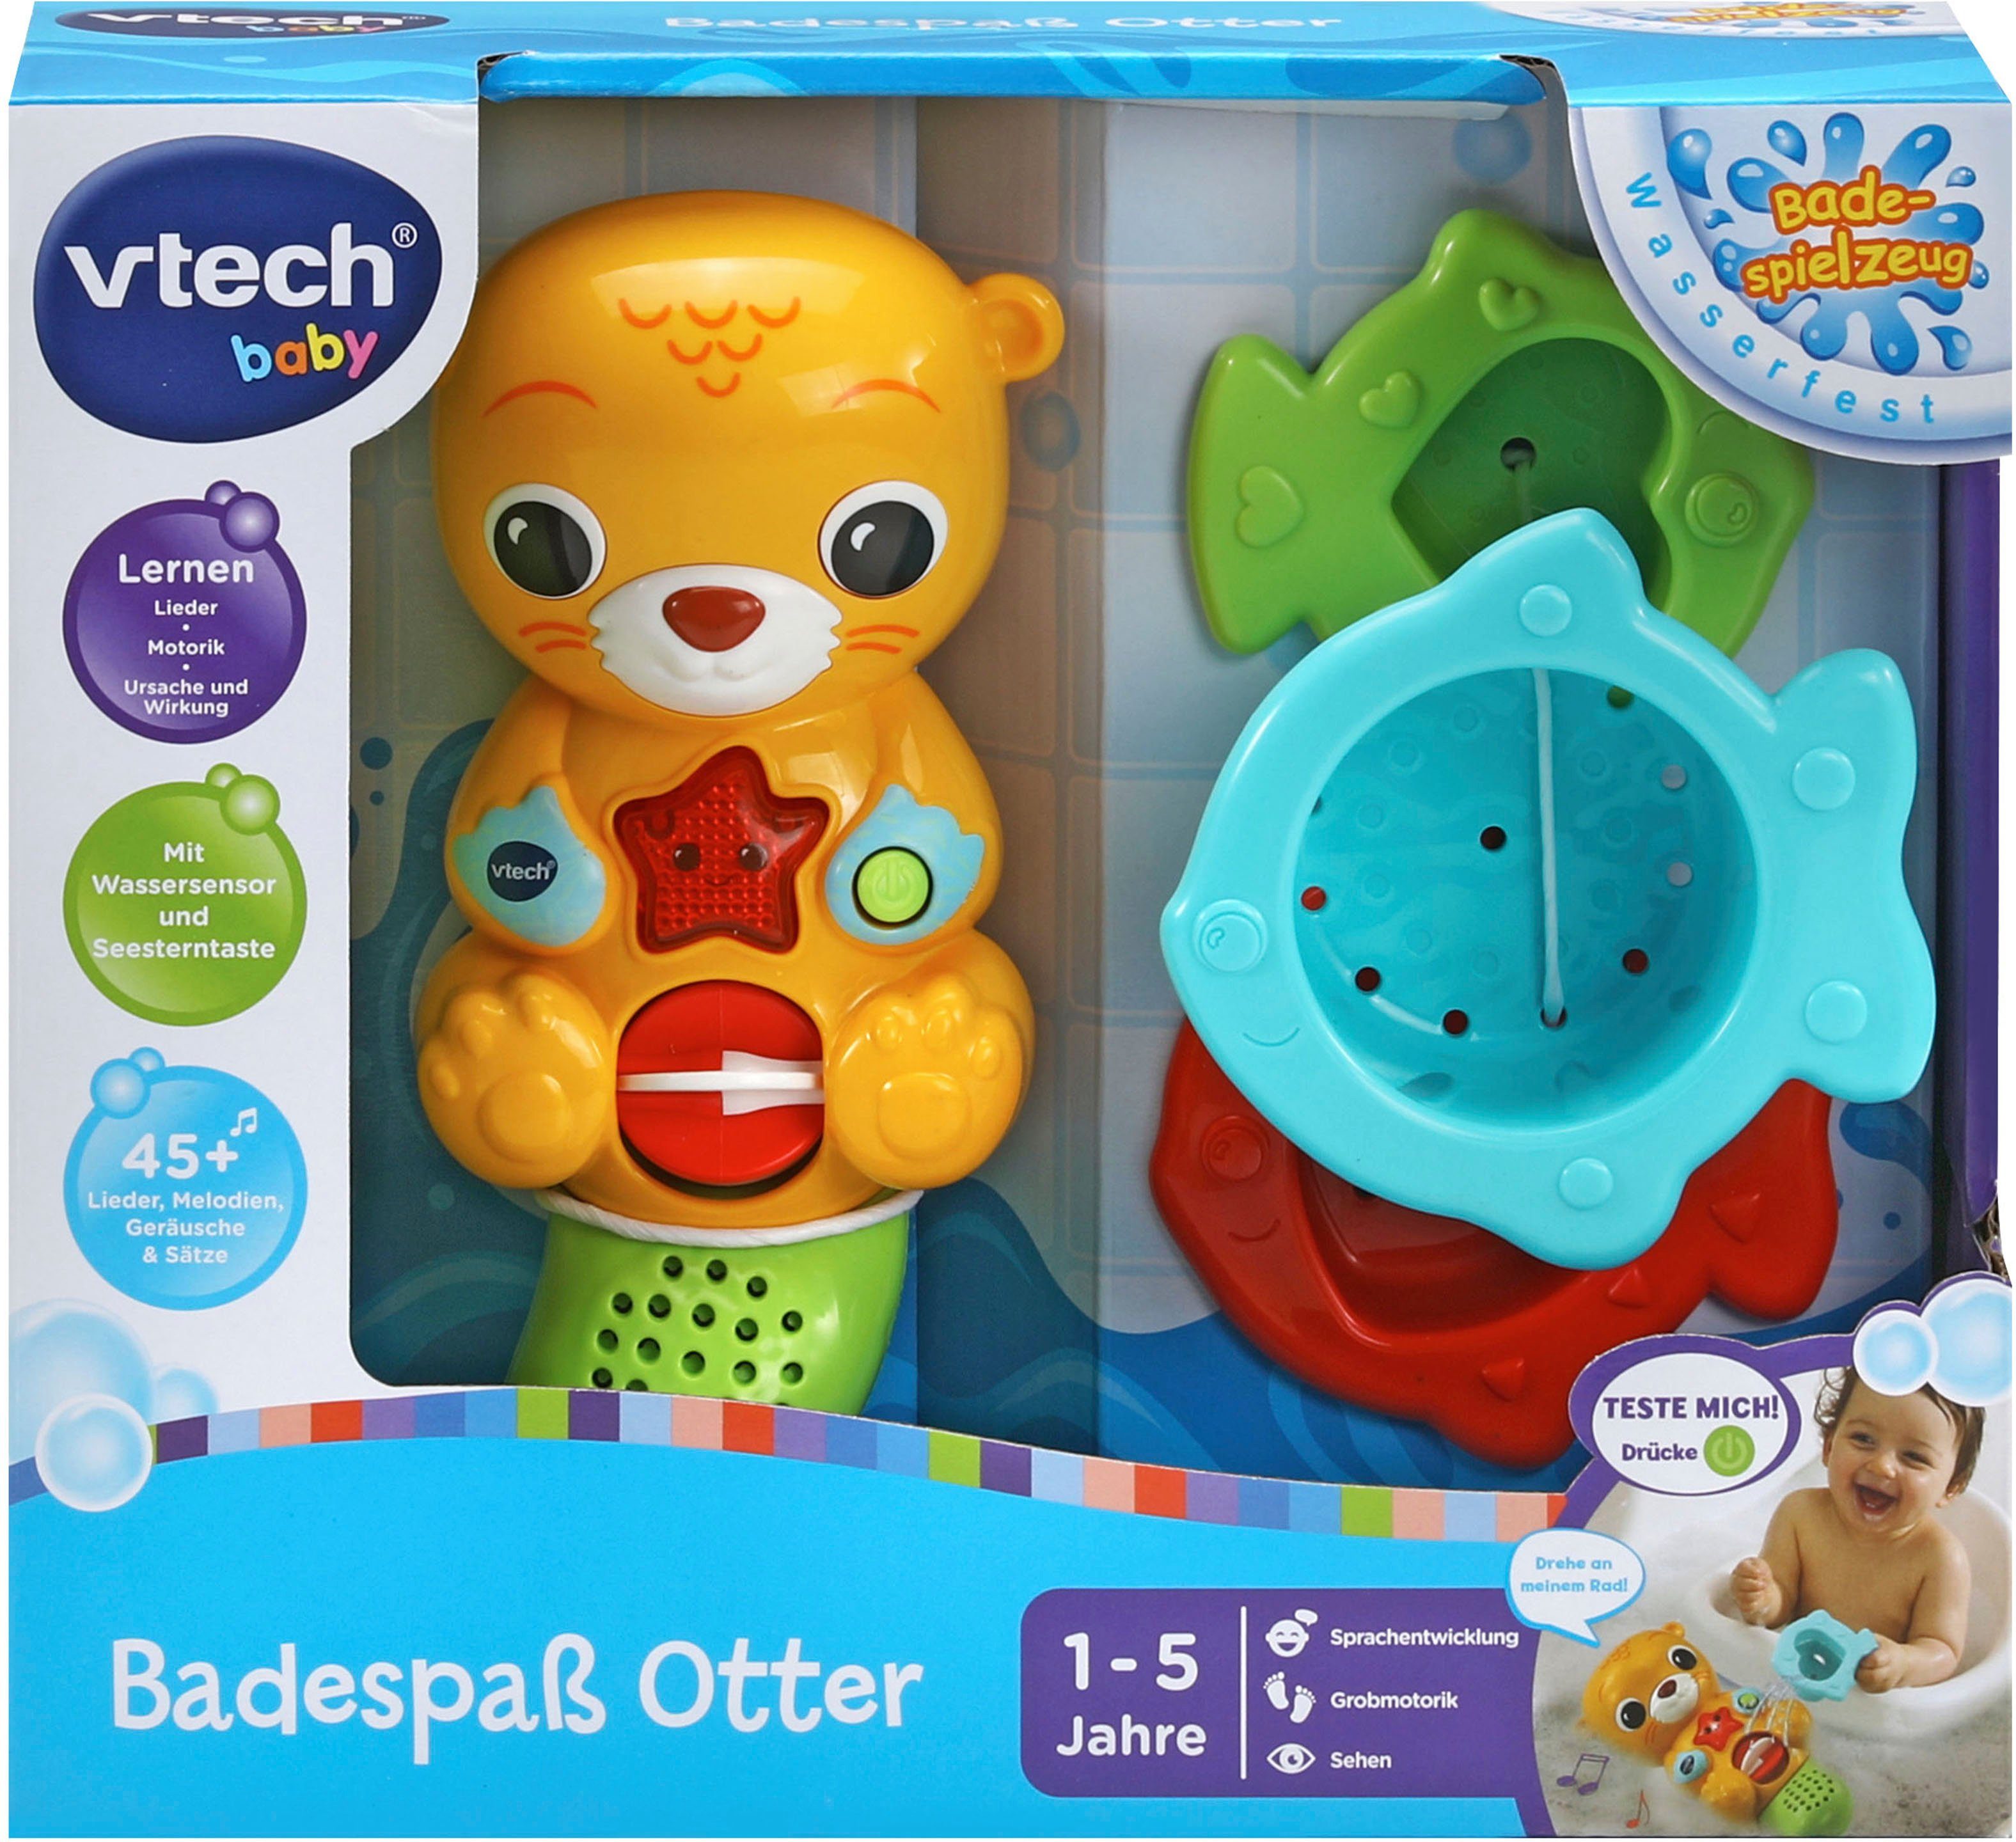 Vtech® Badespielzeug Vtech Baby, Badespaß mit Sound Licht und Otter